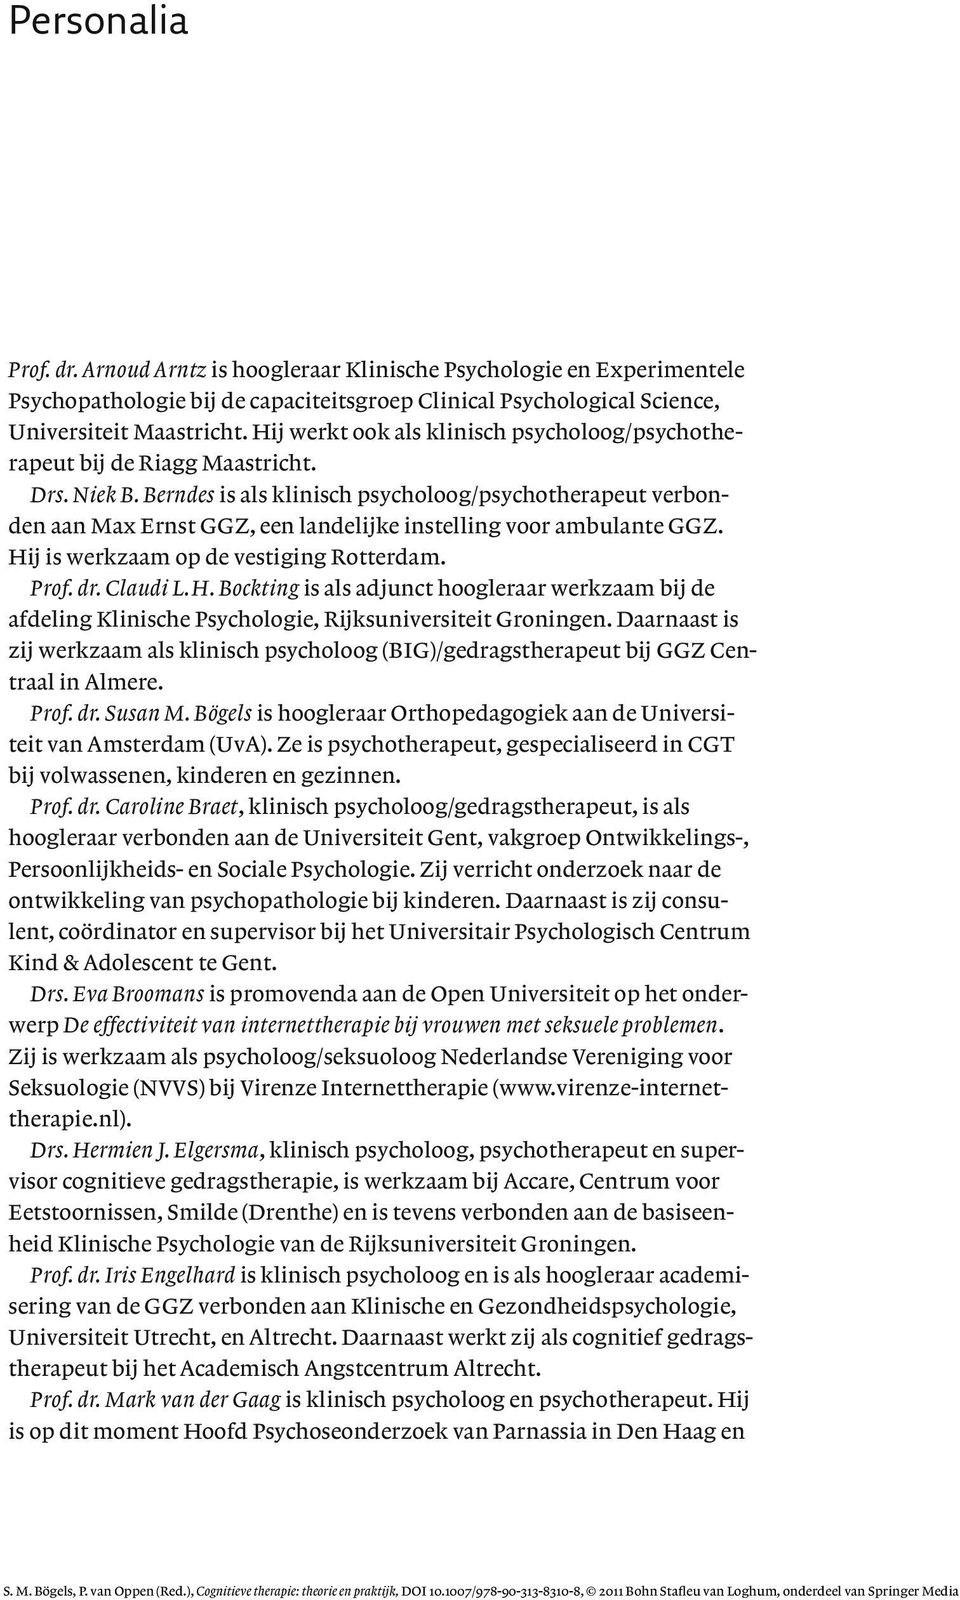 Berndes is als klinisch psycholoog/psychotherapeut verbonden aan Max Ernst GGZ, een landelijke instelling voor ambulante GGZ. Hi